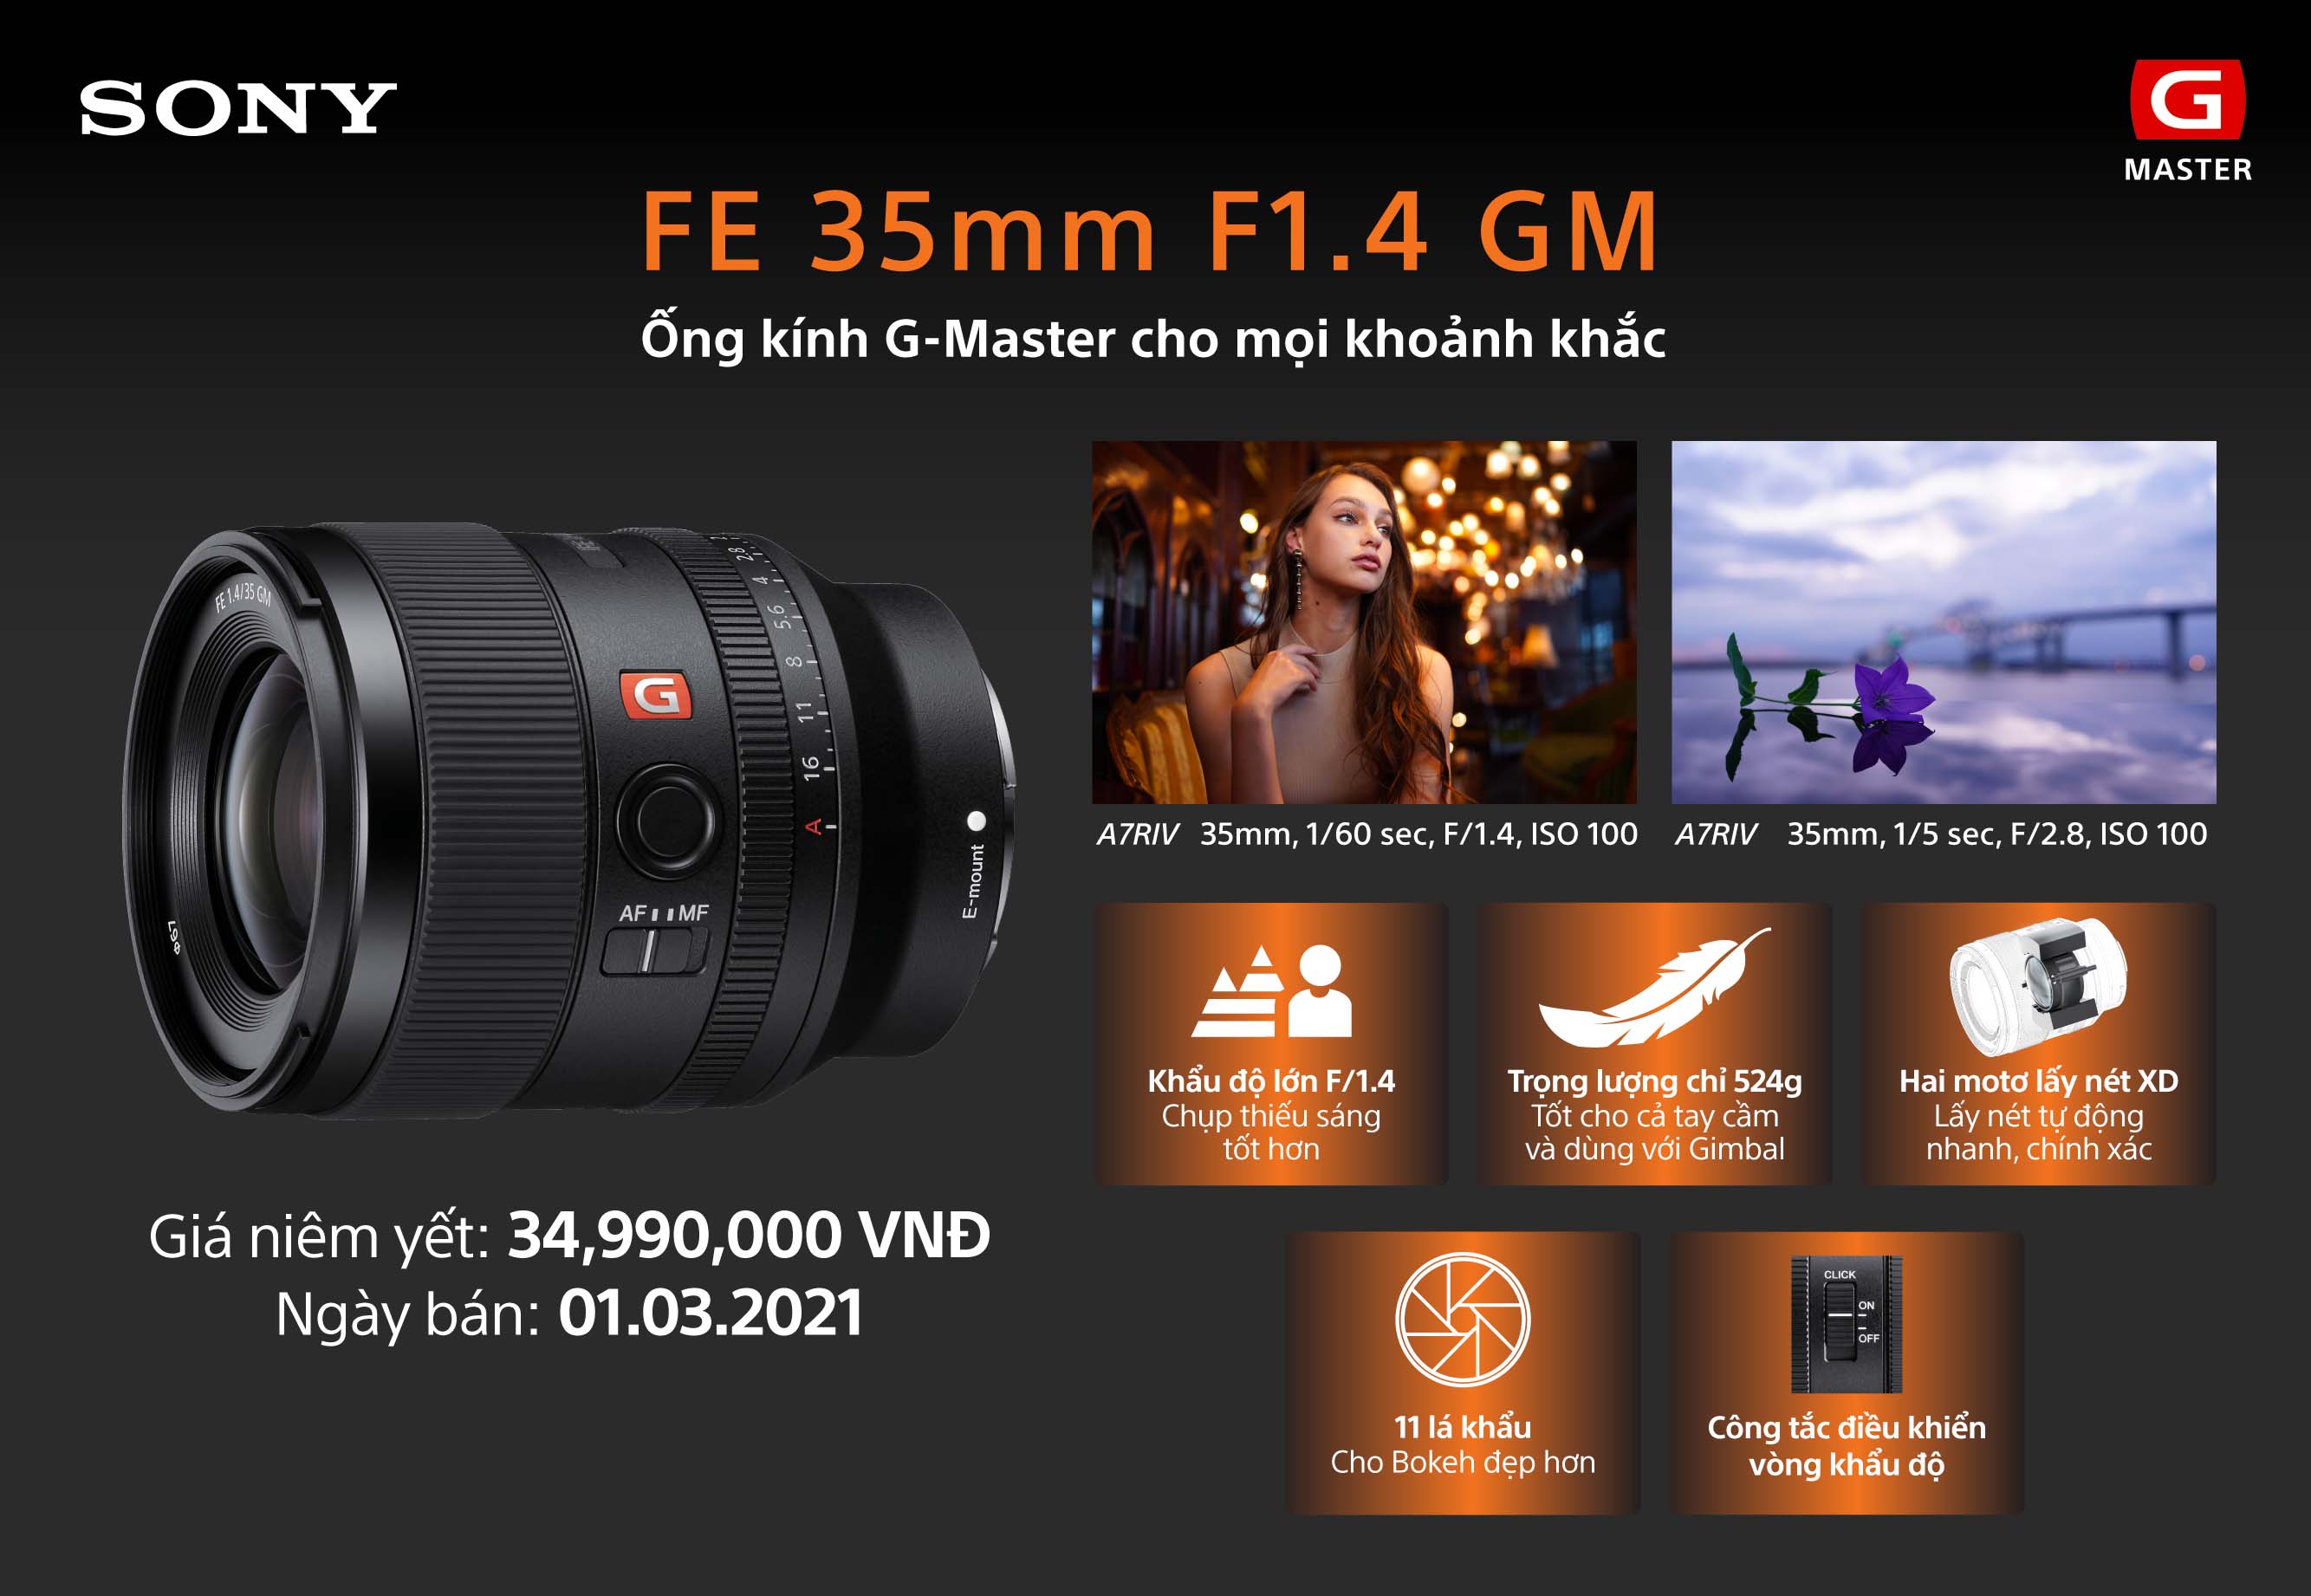 Sony ra mắt ống kính Full-Frame FE 35mm F1.4 GM tại Việt Nam: Chất lượng hình ảnh vượt trội trong một thiết kế nhỏ gọn